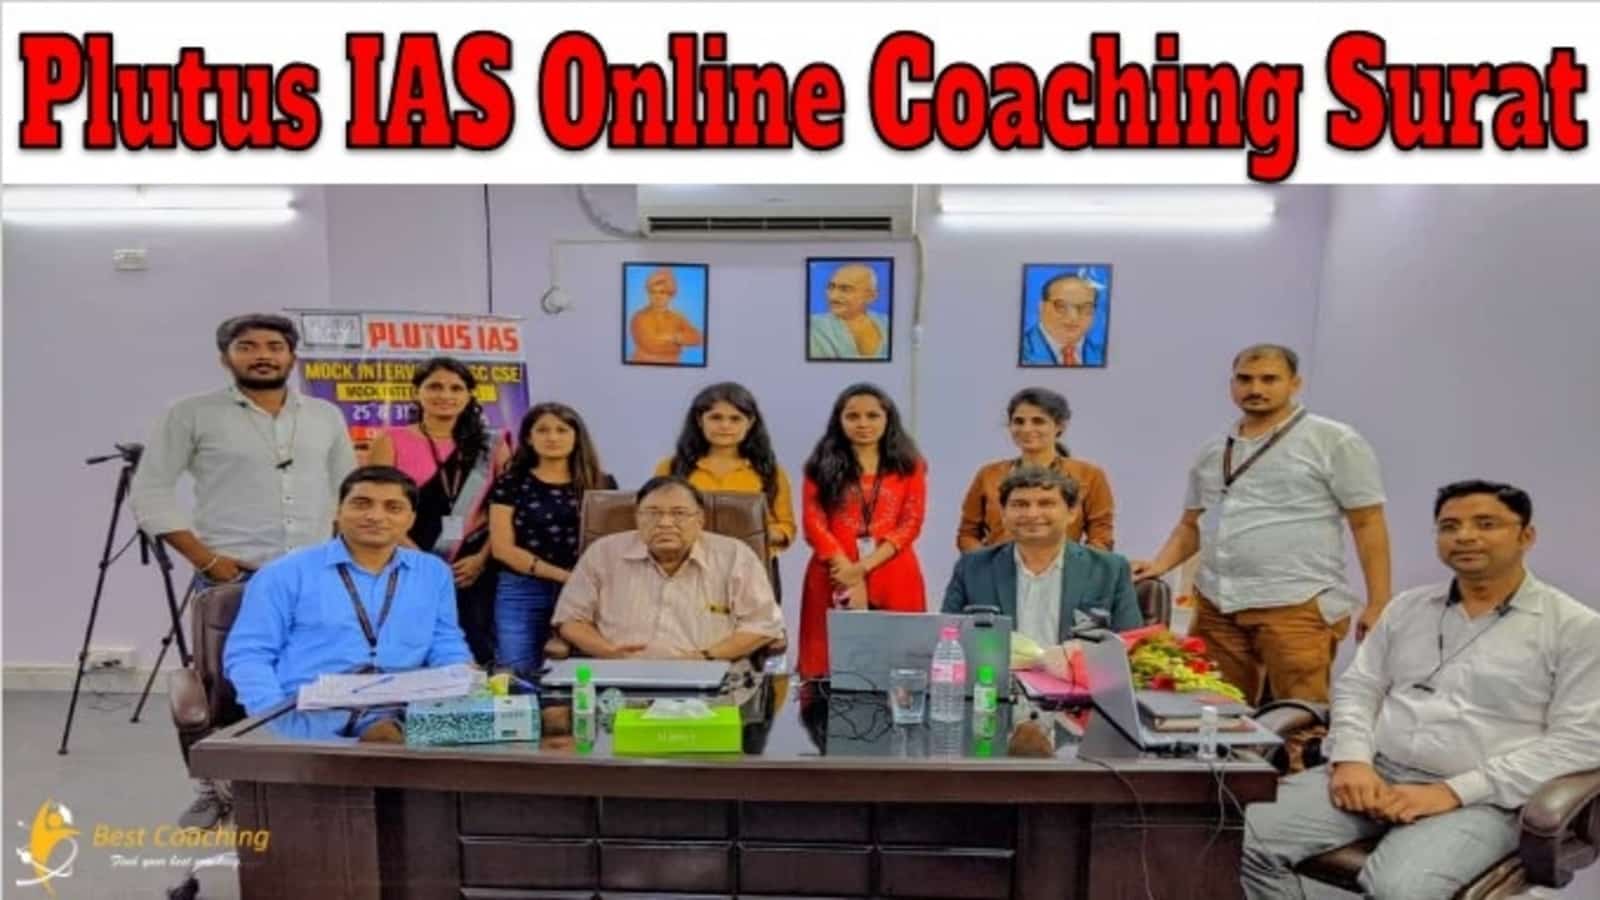 Plutus IAS Online Coaching Surat